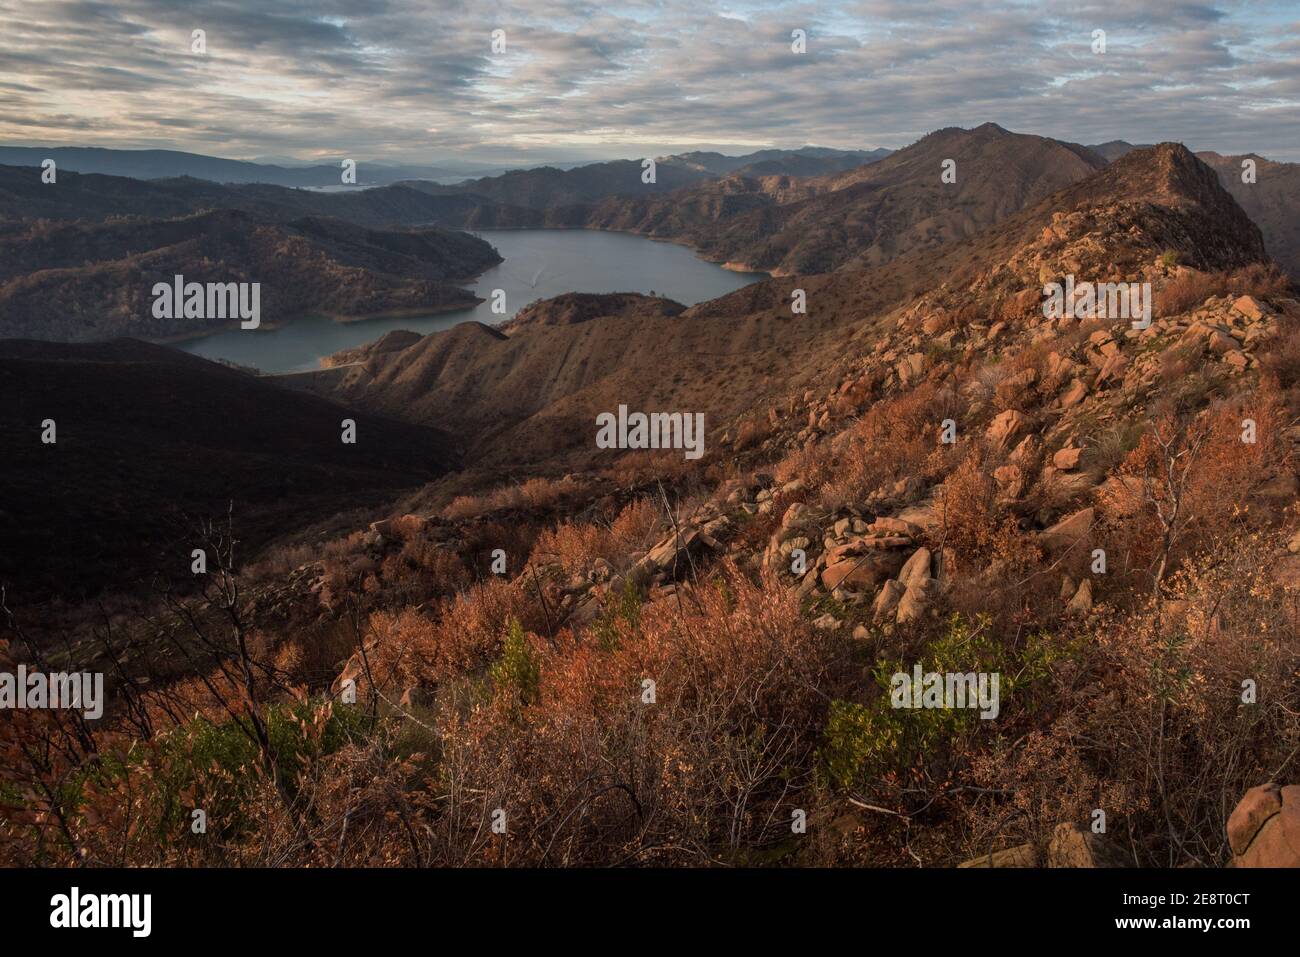 Una montagna che si affaccia sul lago Berryessa nella valle sottostante, una parte panoramica del paesaggio della California. Foto Stock